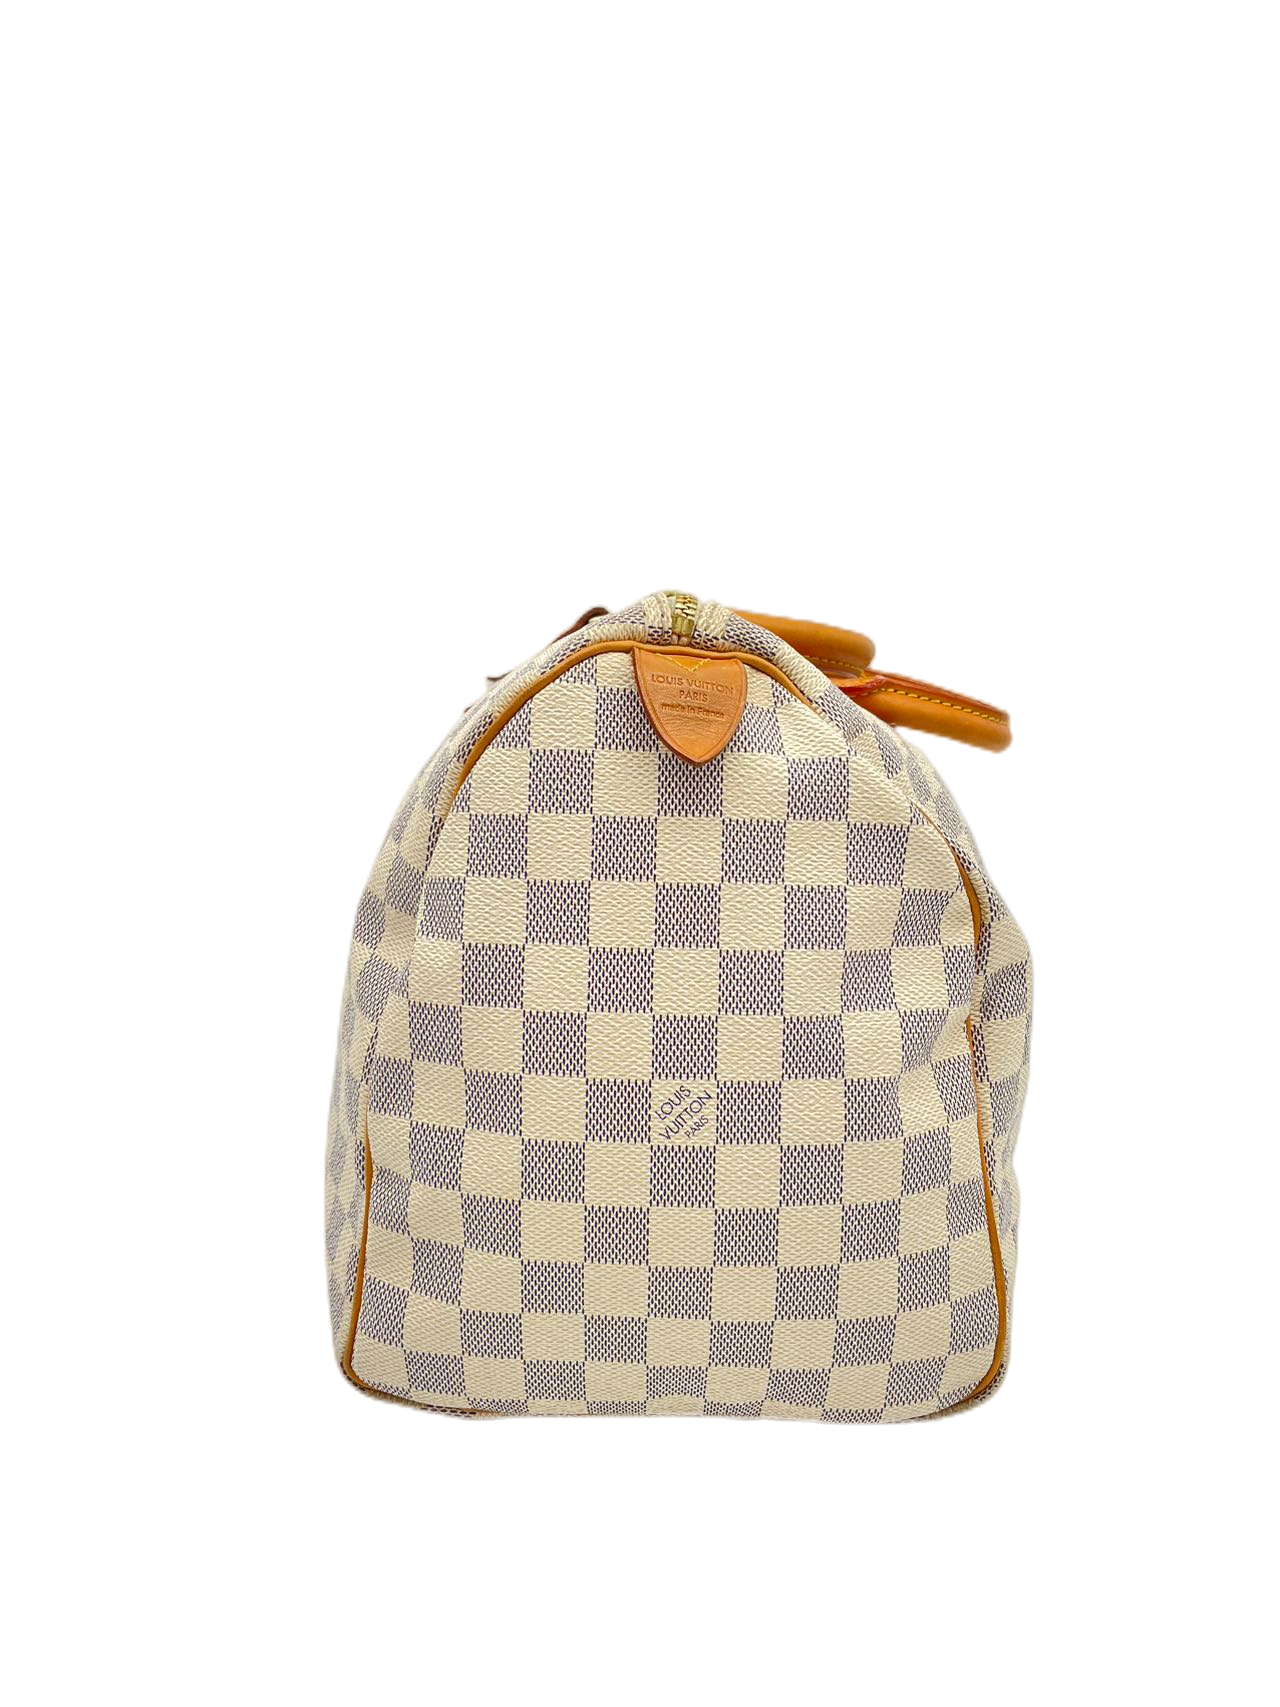 Preloved Louis Vuitton Damier Azur Speedy 35 Satchel Handbag